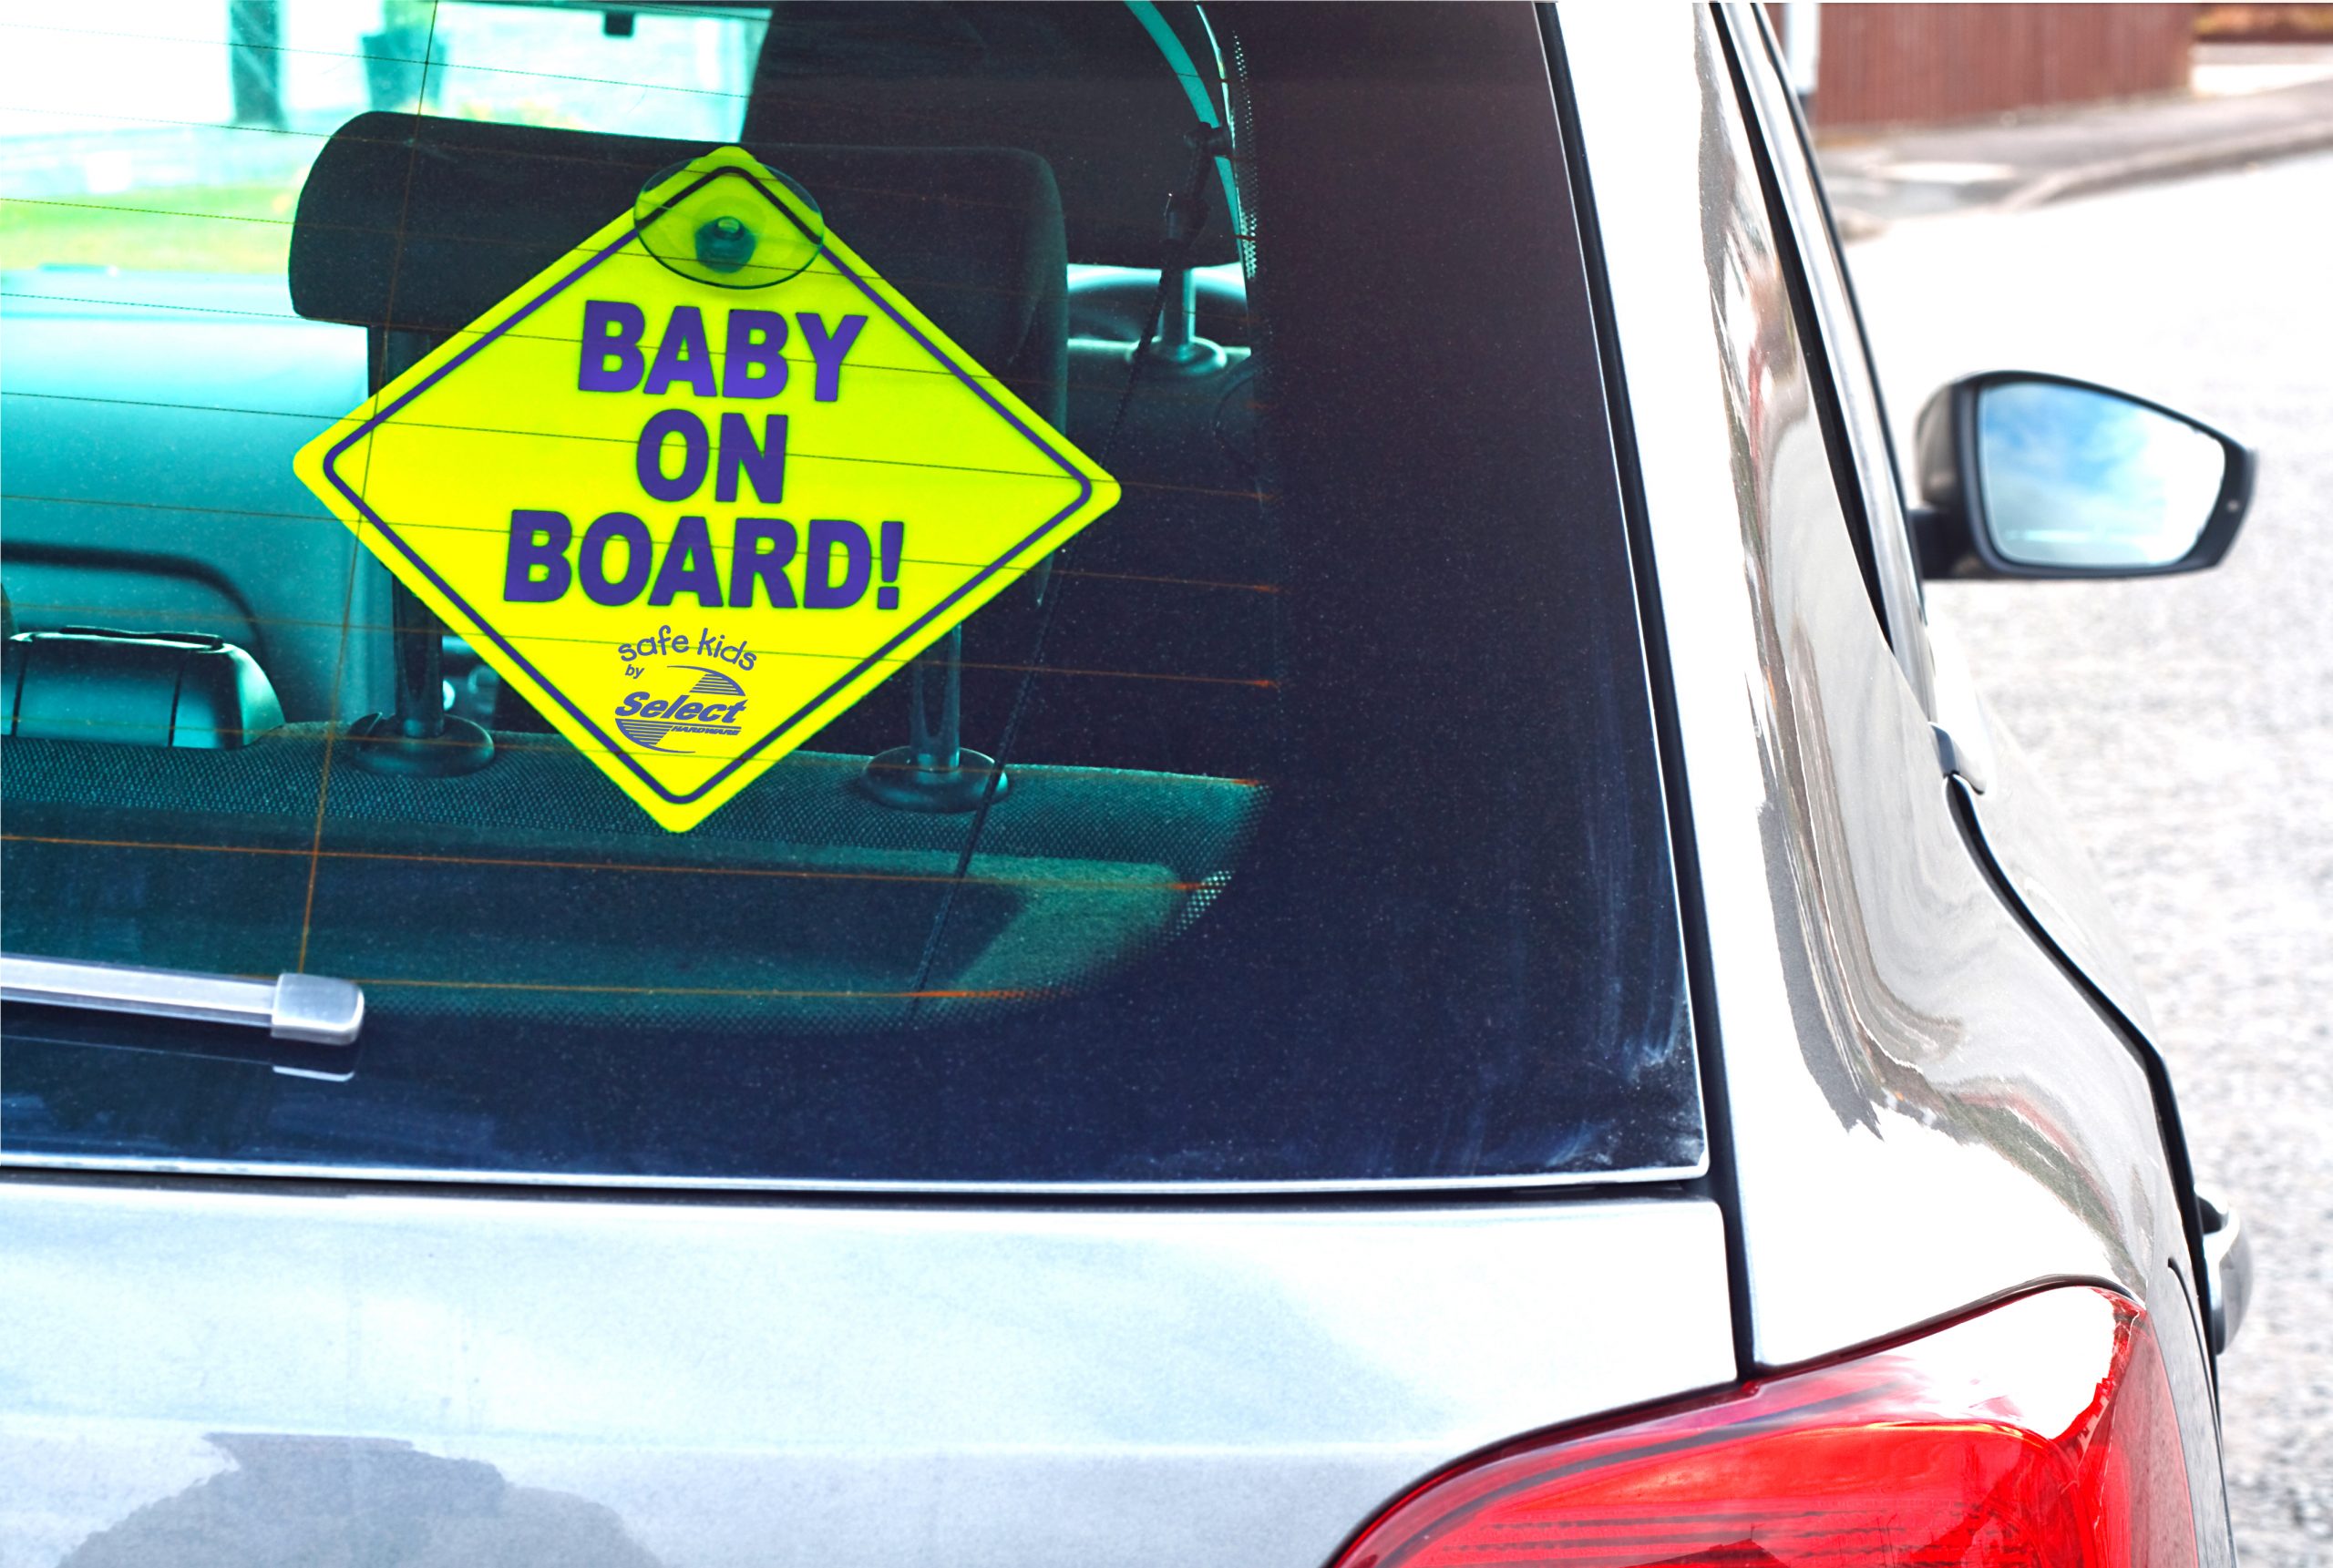 SAFE KIDS "BABY ON BOARD" SIGN, 1-pack